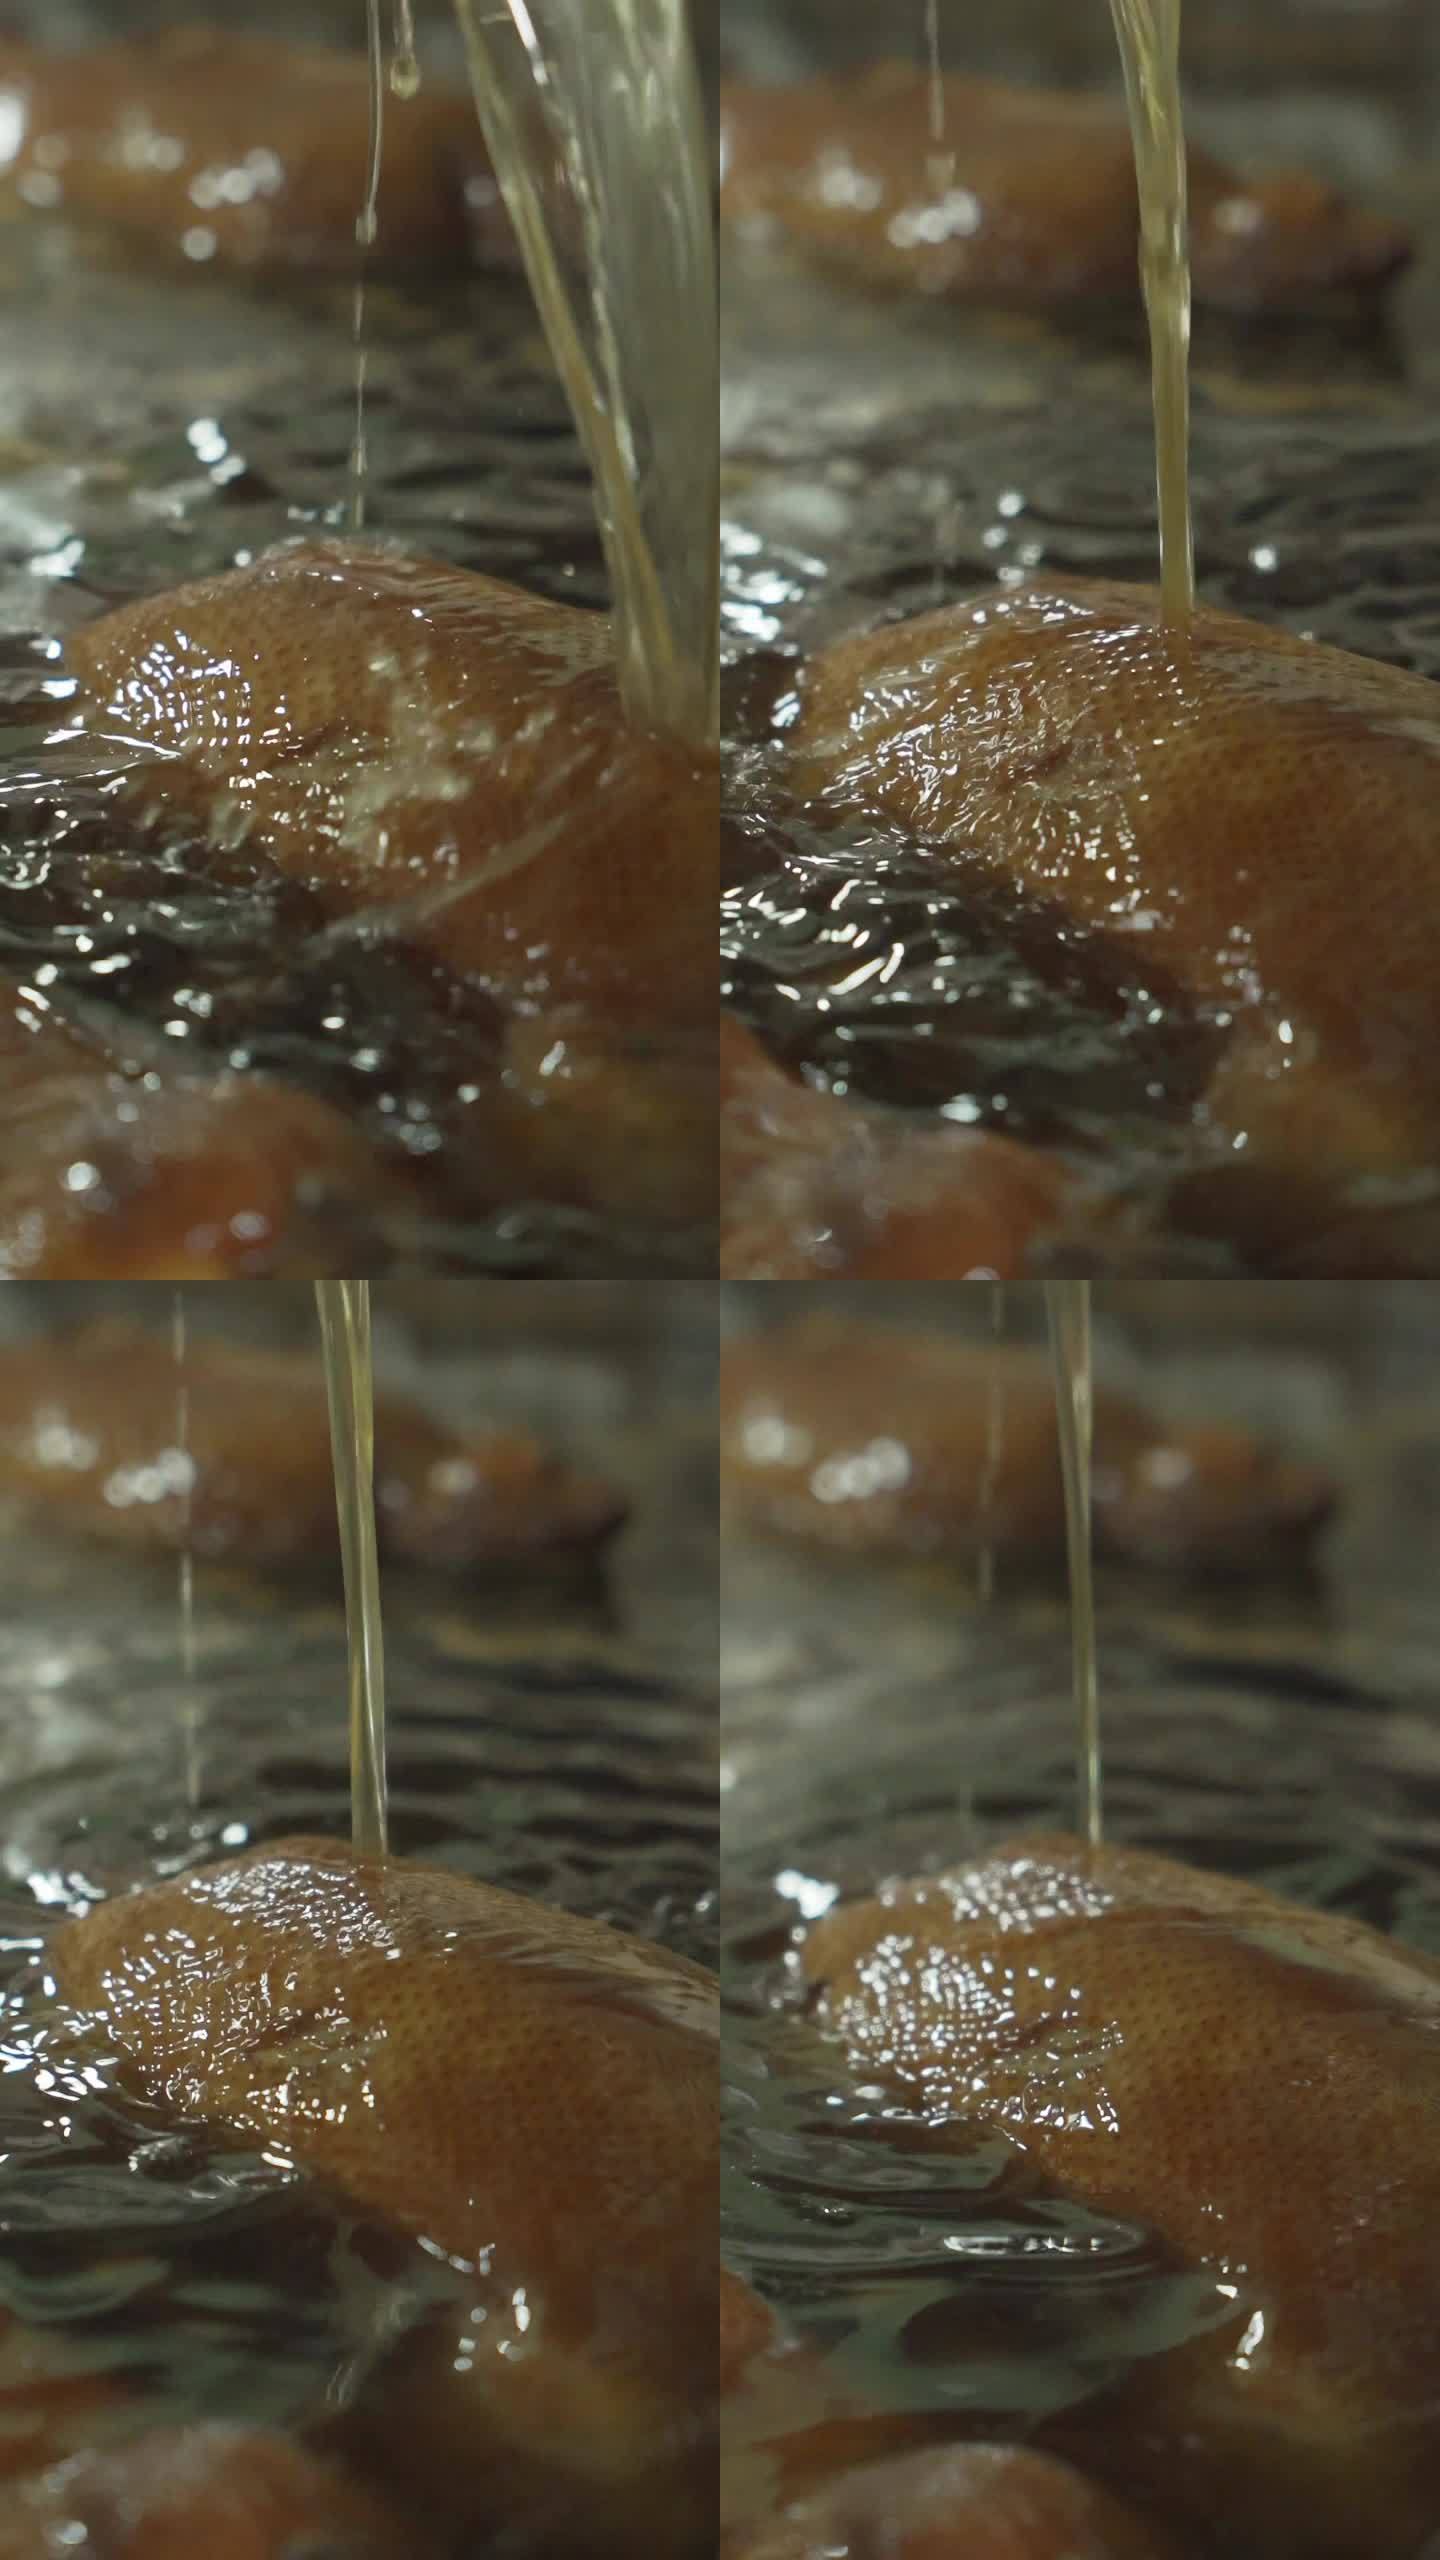 狮头鹅卤鹅工厂滴油淋汁卤汁生产过程分镜